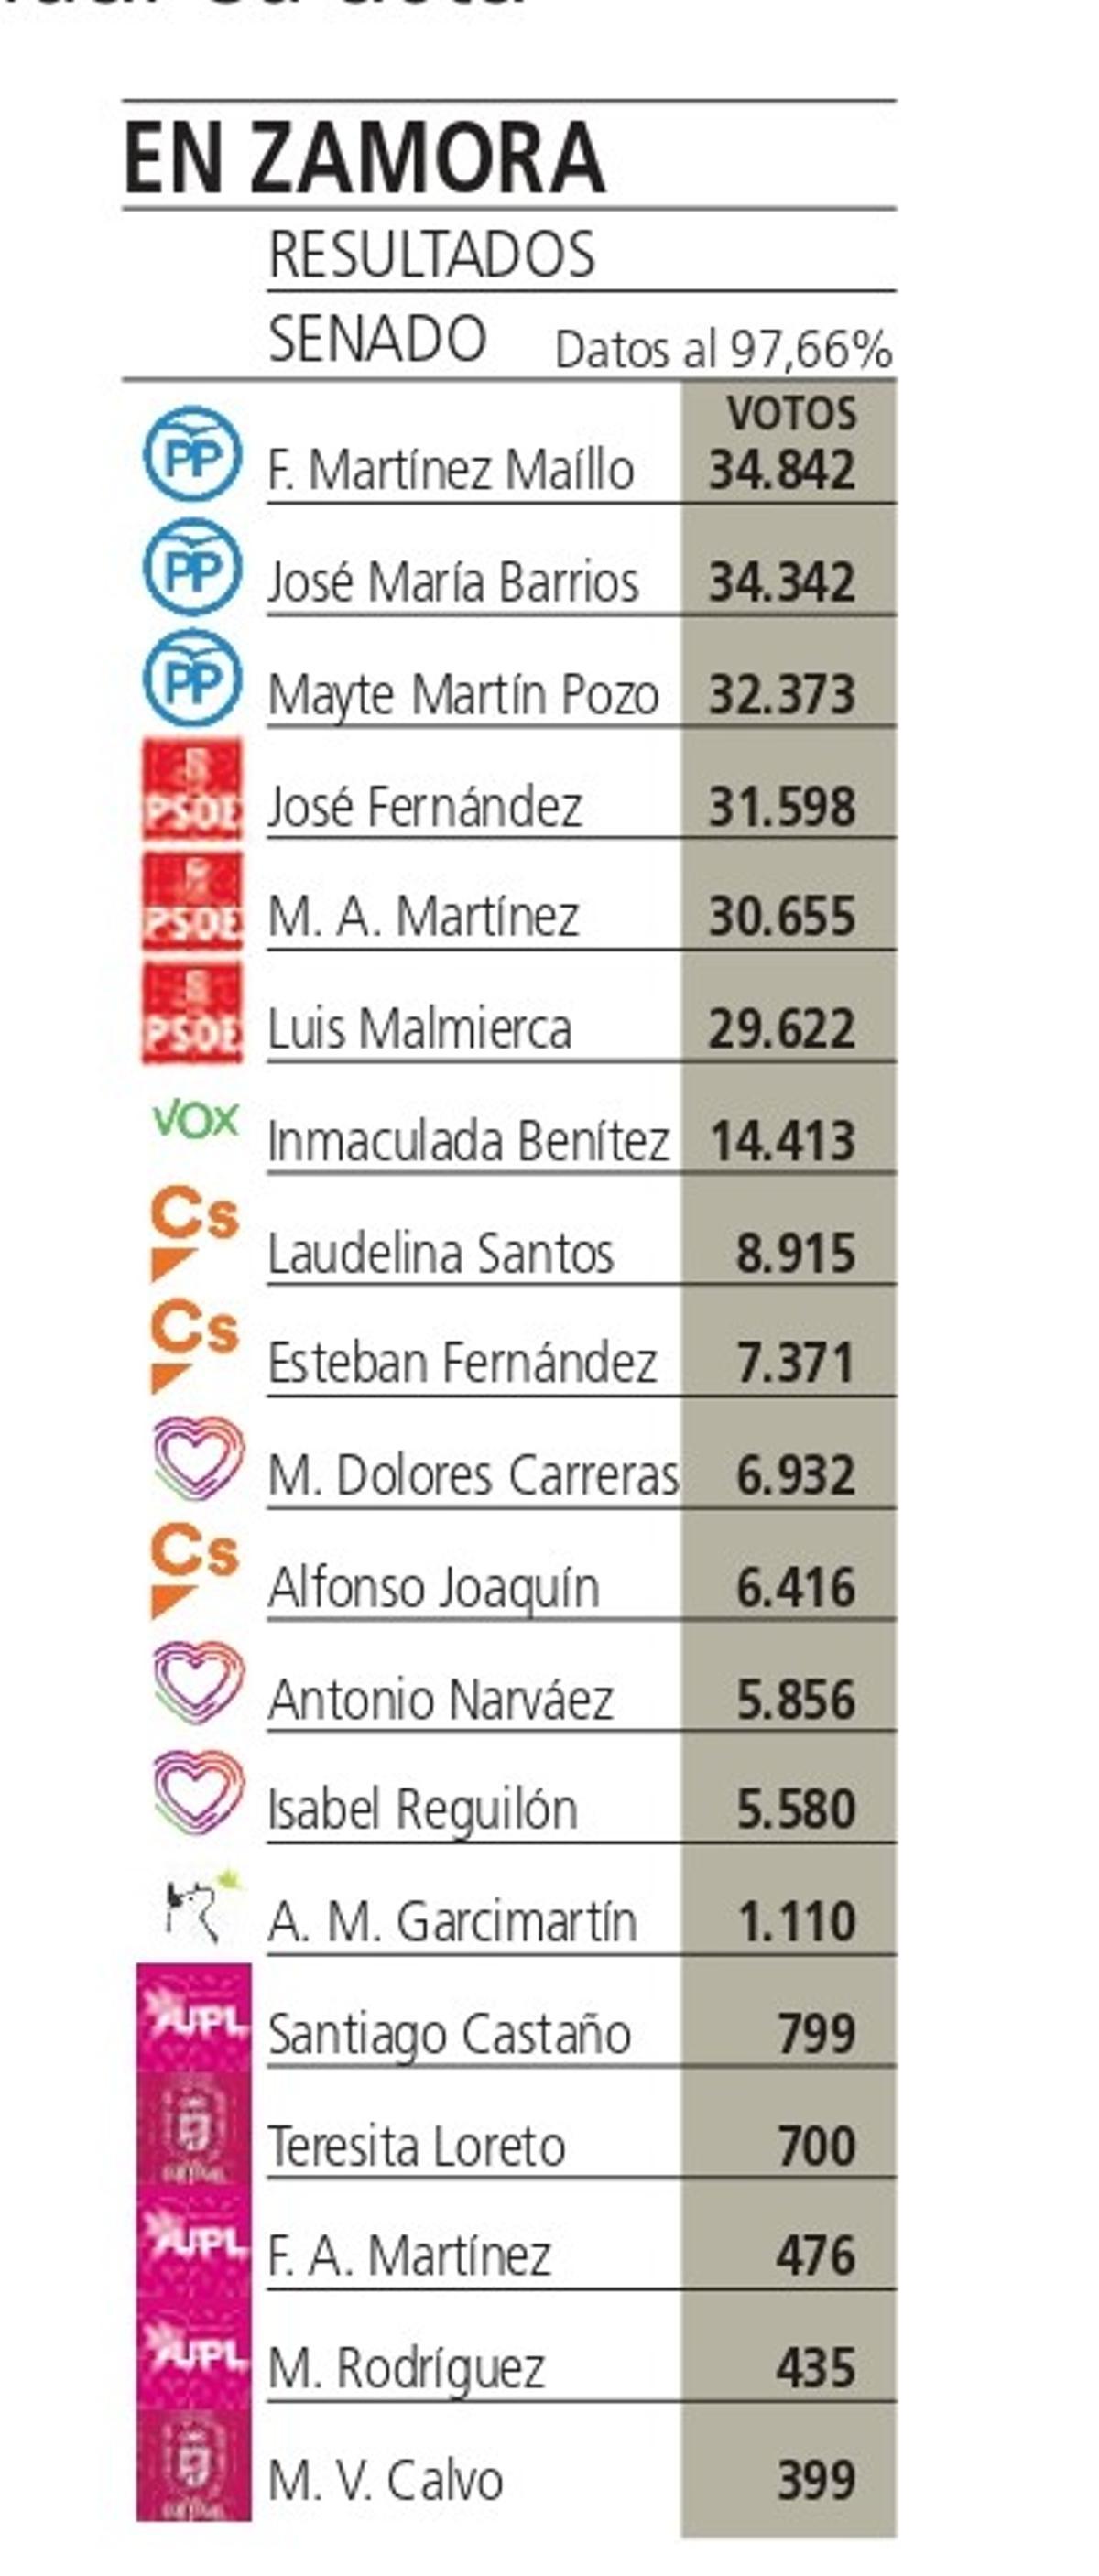 Resultados en Zamora del Senado en las elecciones generales de noviembre 2019.